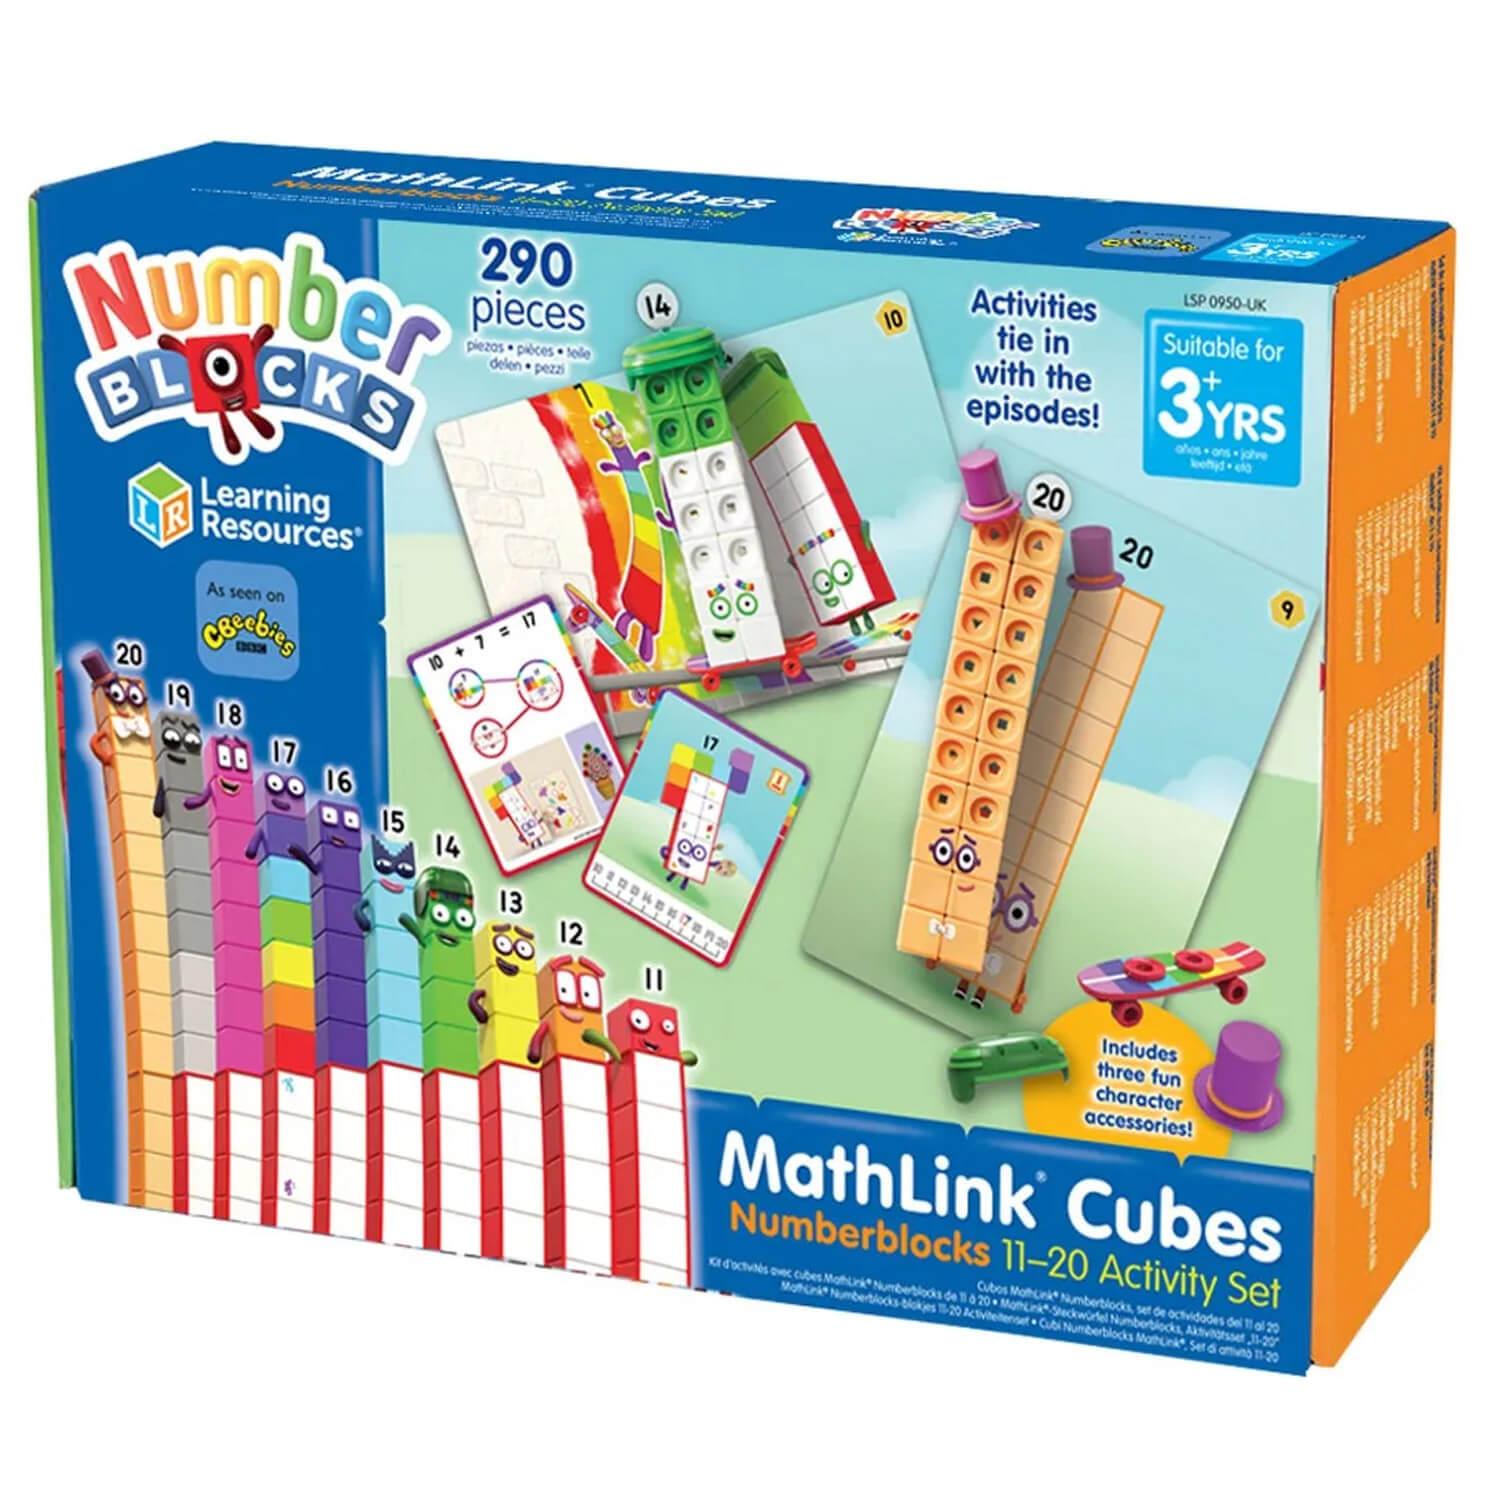 Kit d?activités avec cubes MathLink Numberblocks de 11 à 20